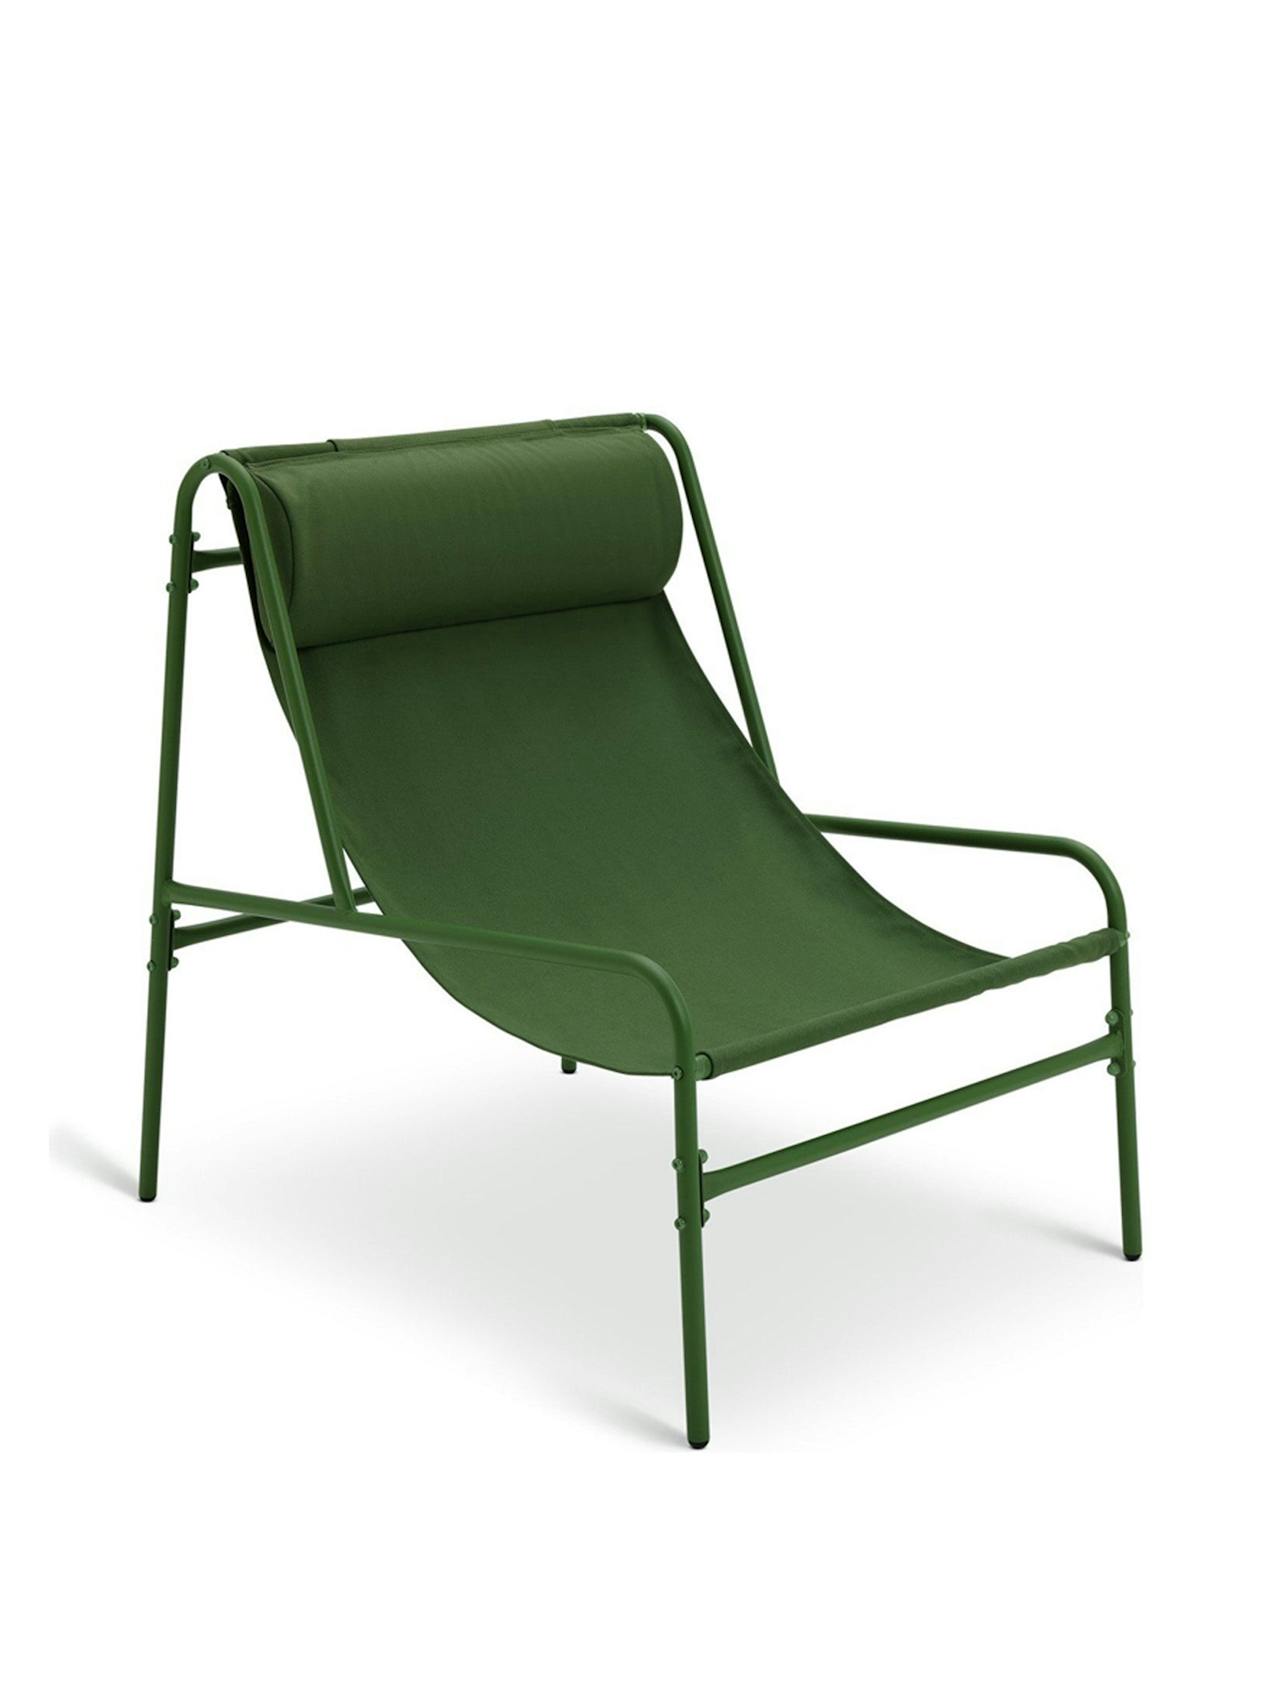 Teka metal garden chair